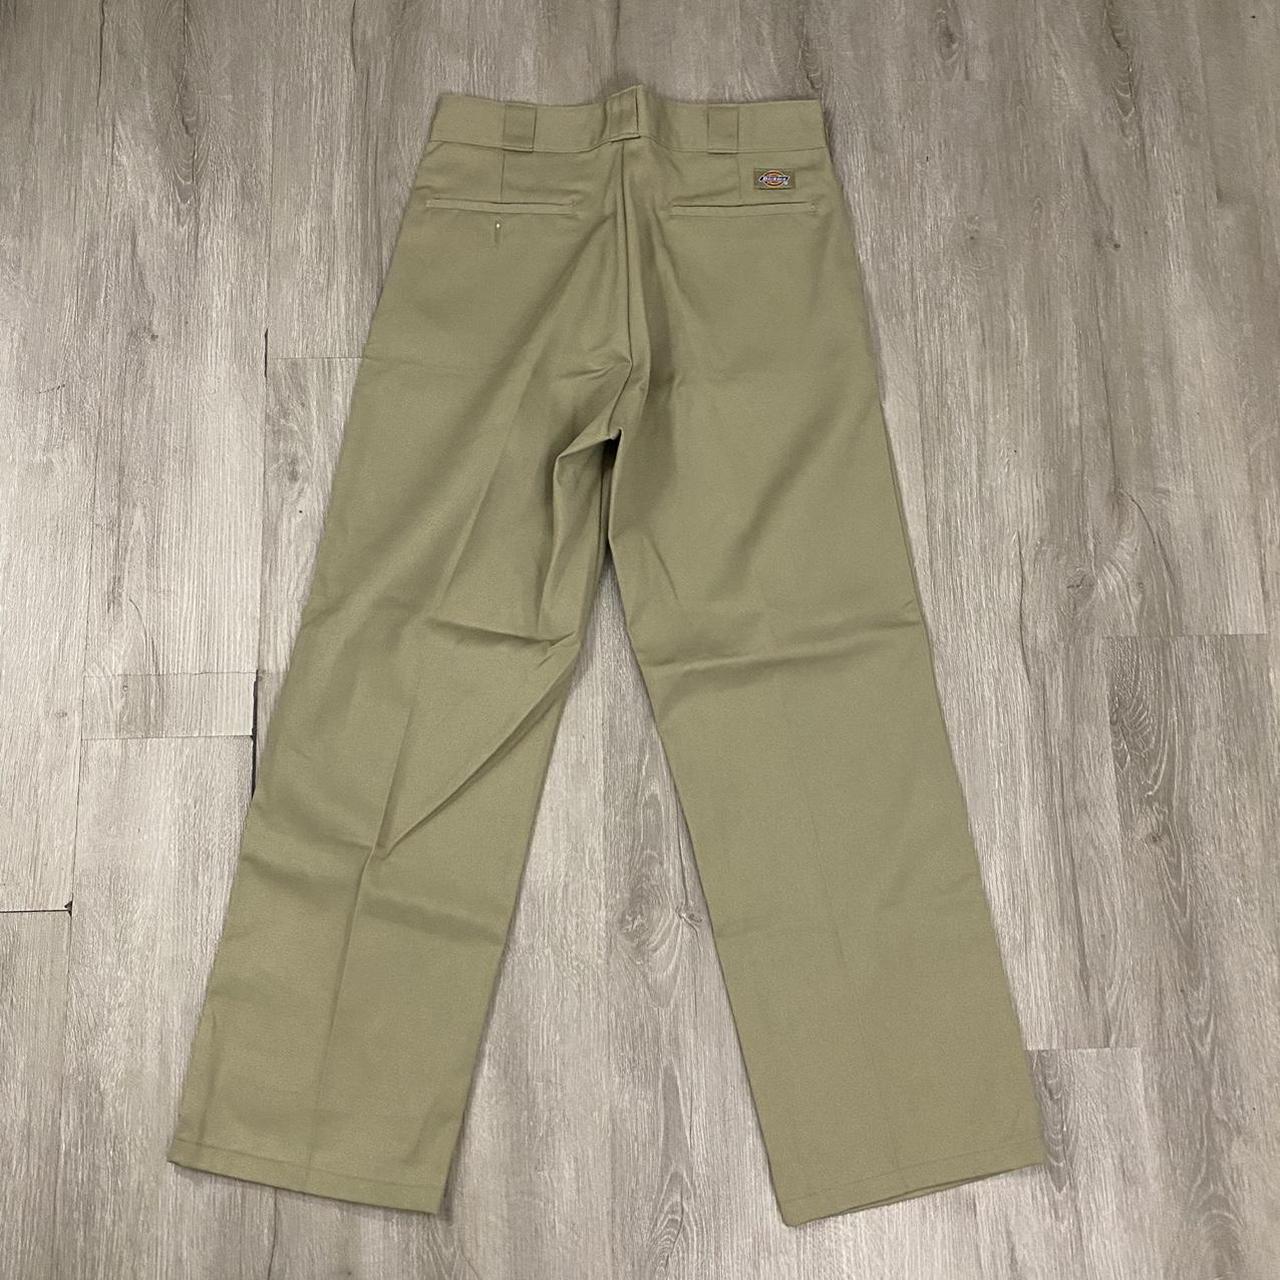 Vintage dickies khaki pants 32x28 In great condition... - Depop